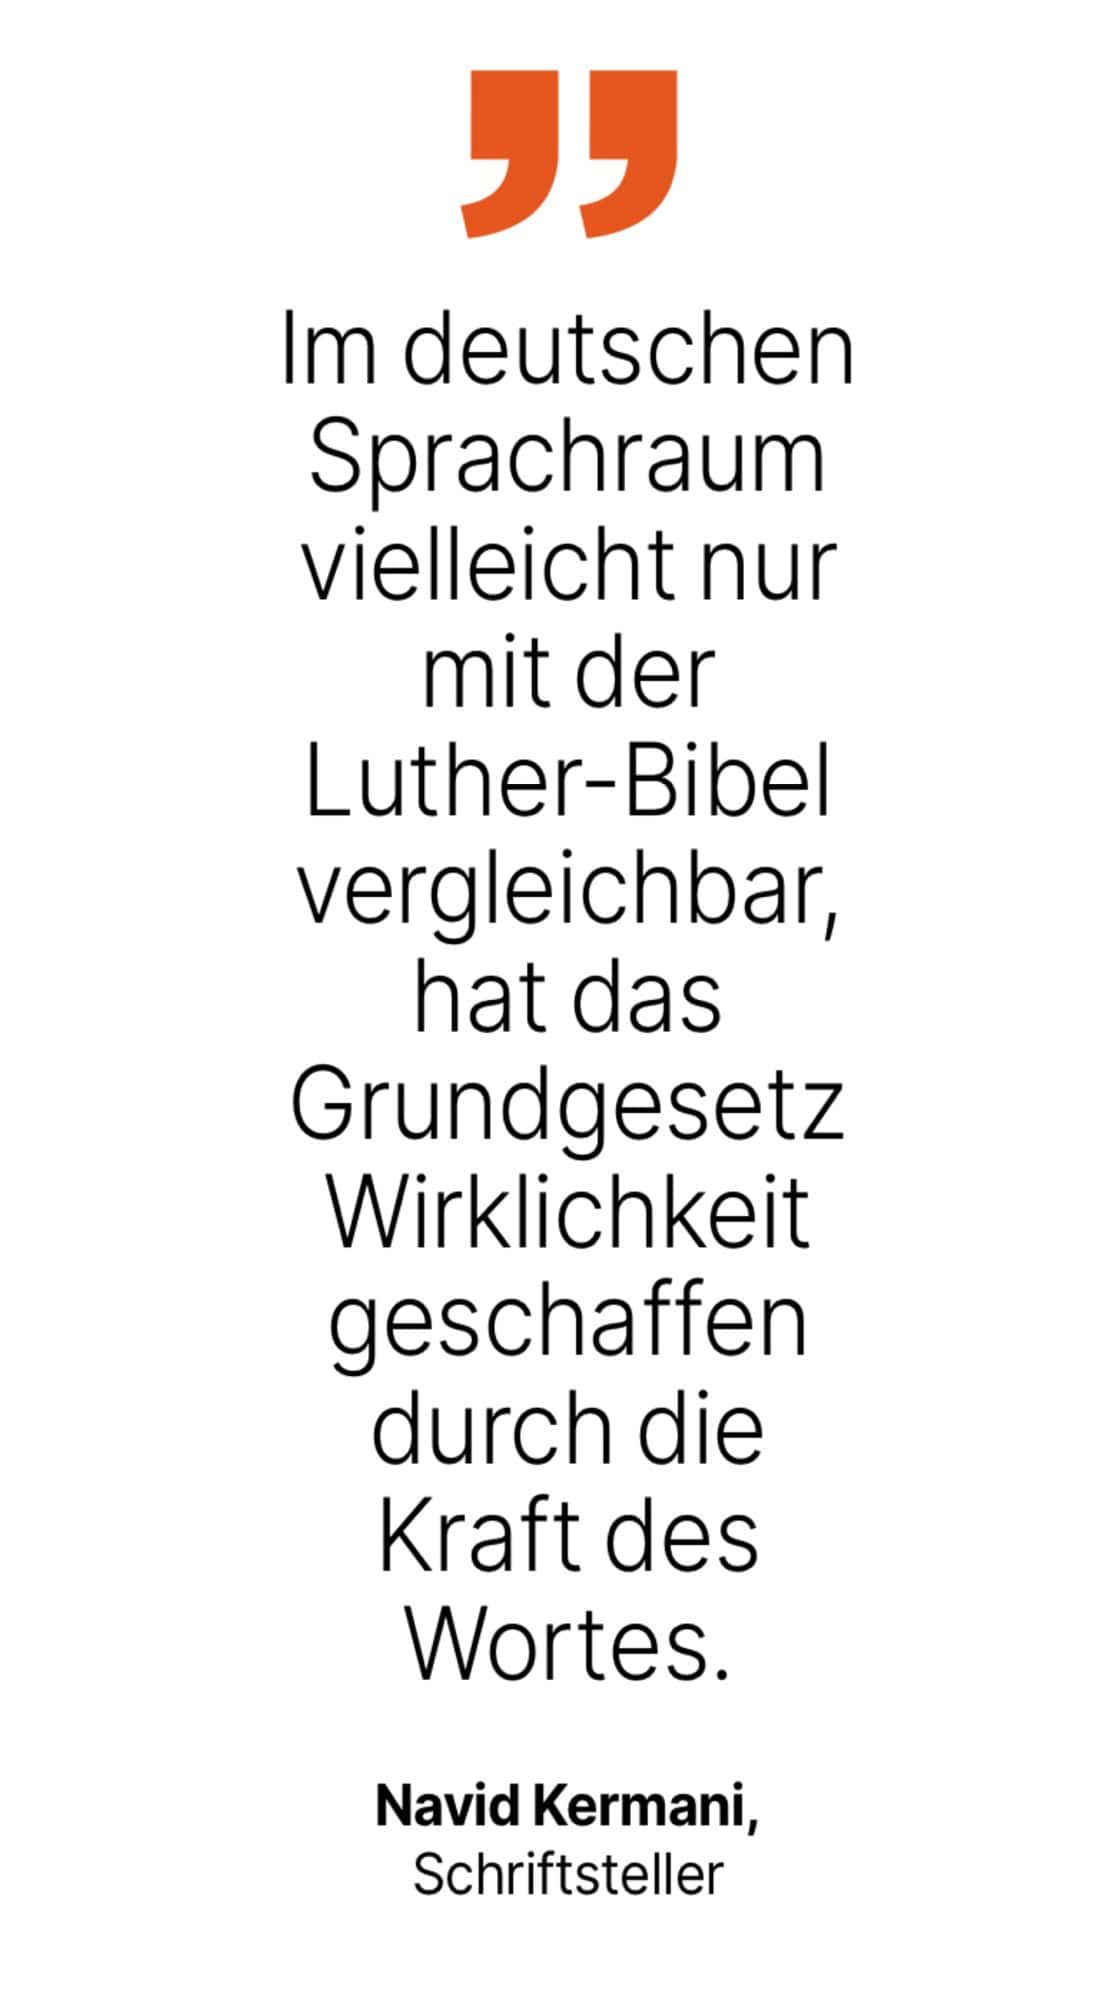 Navid Kermani, Schriftsteller: Im deutschen Sprachraum vielleicht nur mit der Luther-Bibel vergleichbar, hat das Grundgesetz Wirklichkeit geschaffen durch die Kraft des Wortes.